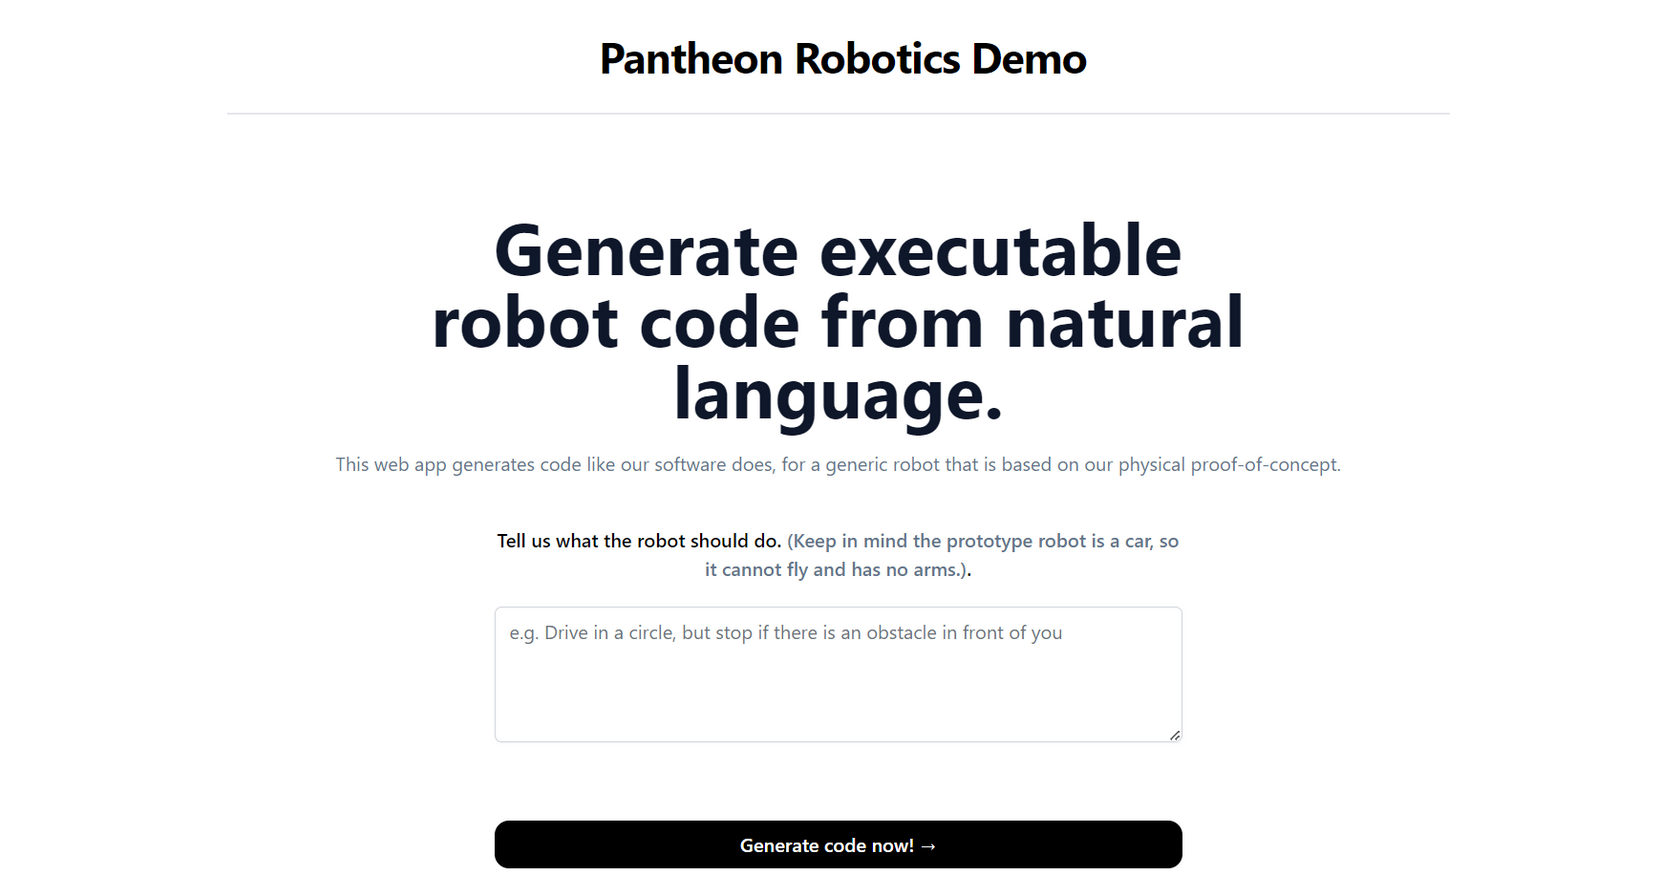 Pantheon Robotics